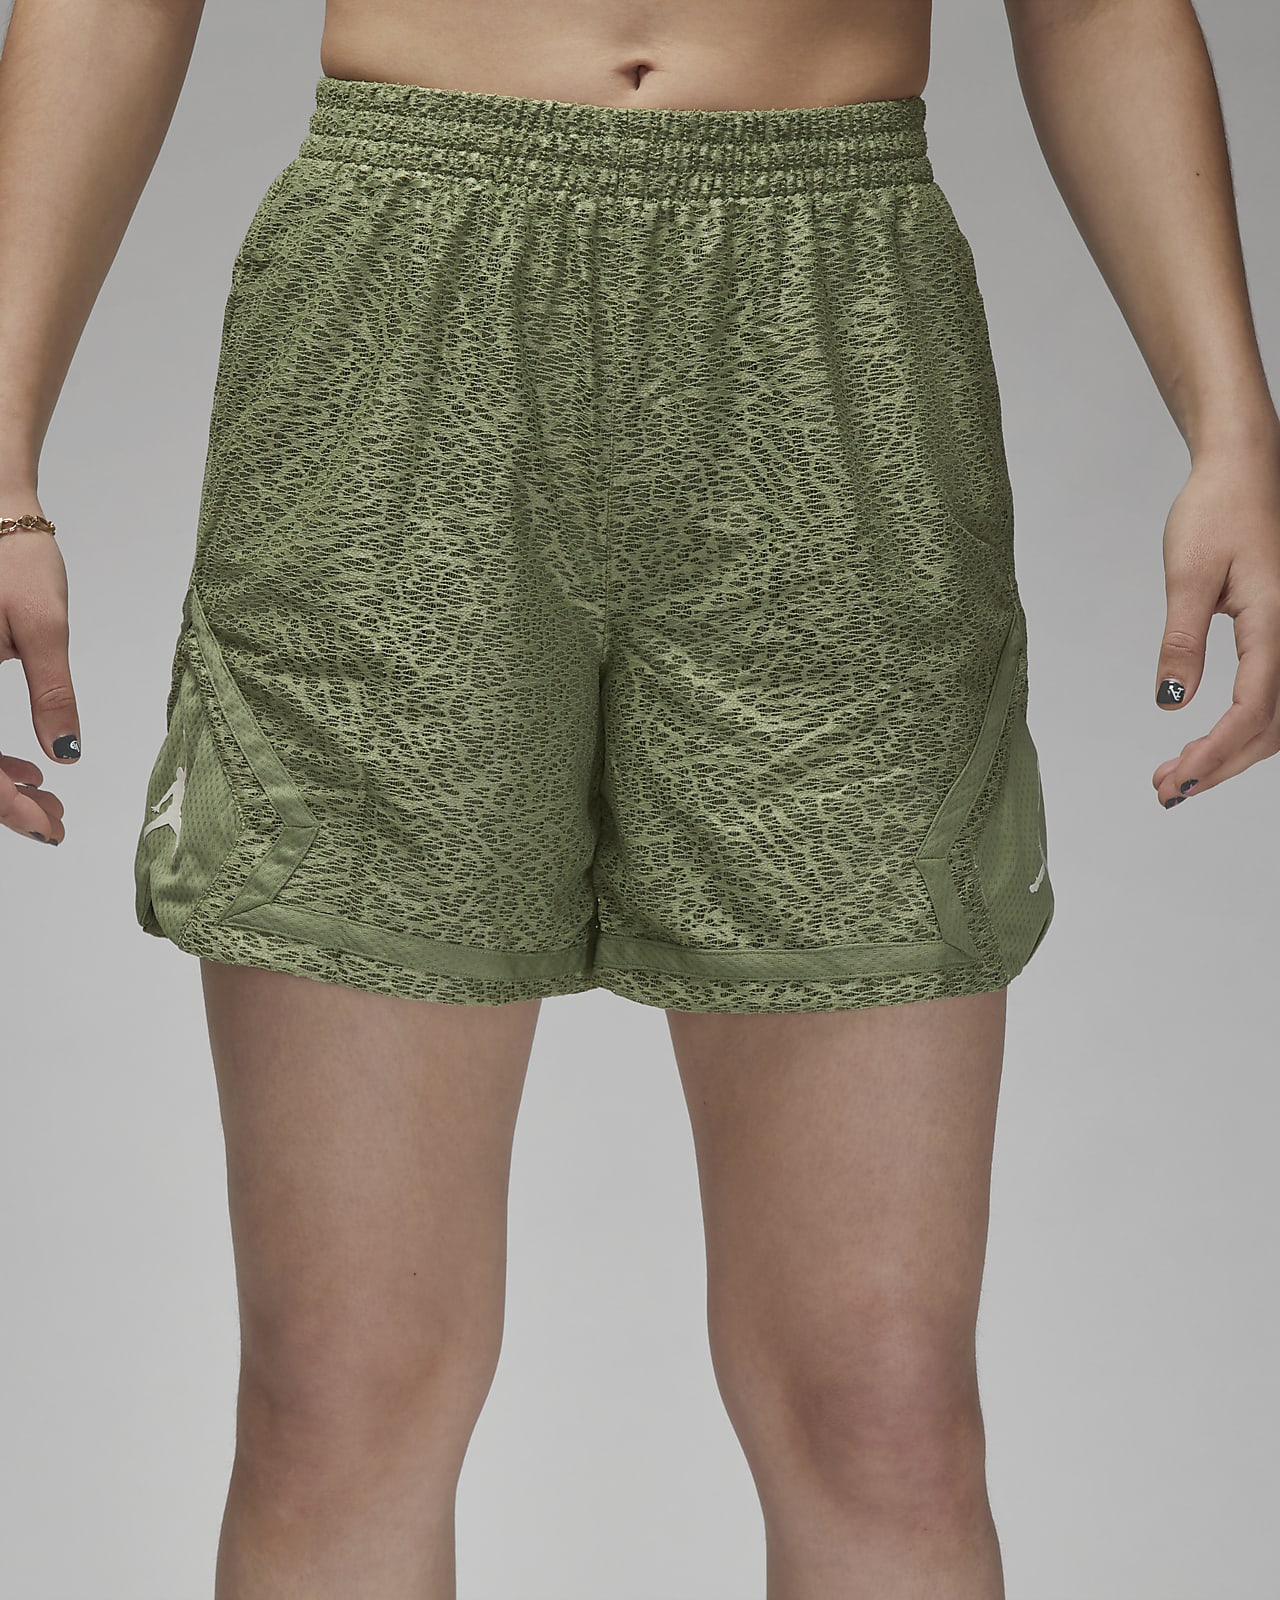 Air Jordan Shorts - Elephant print - XL